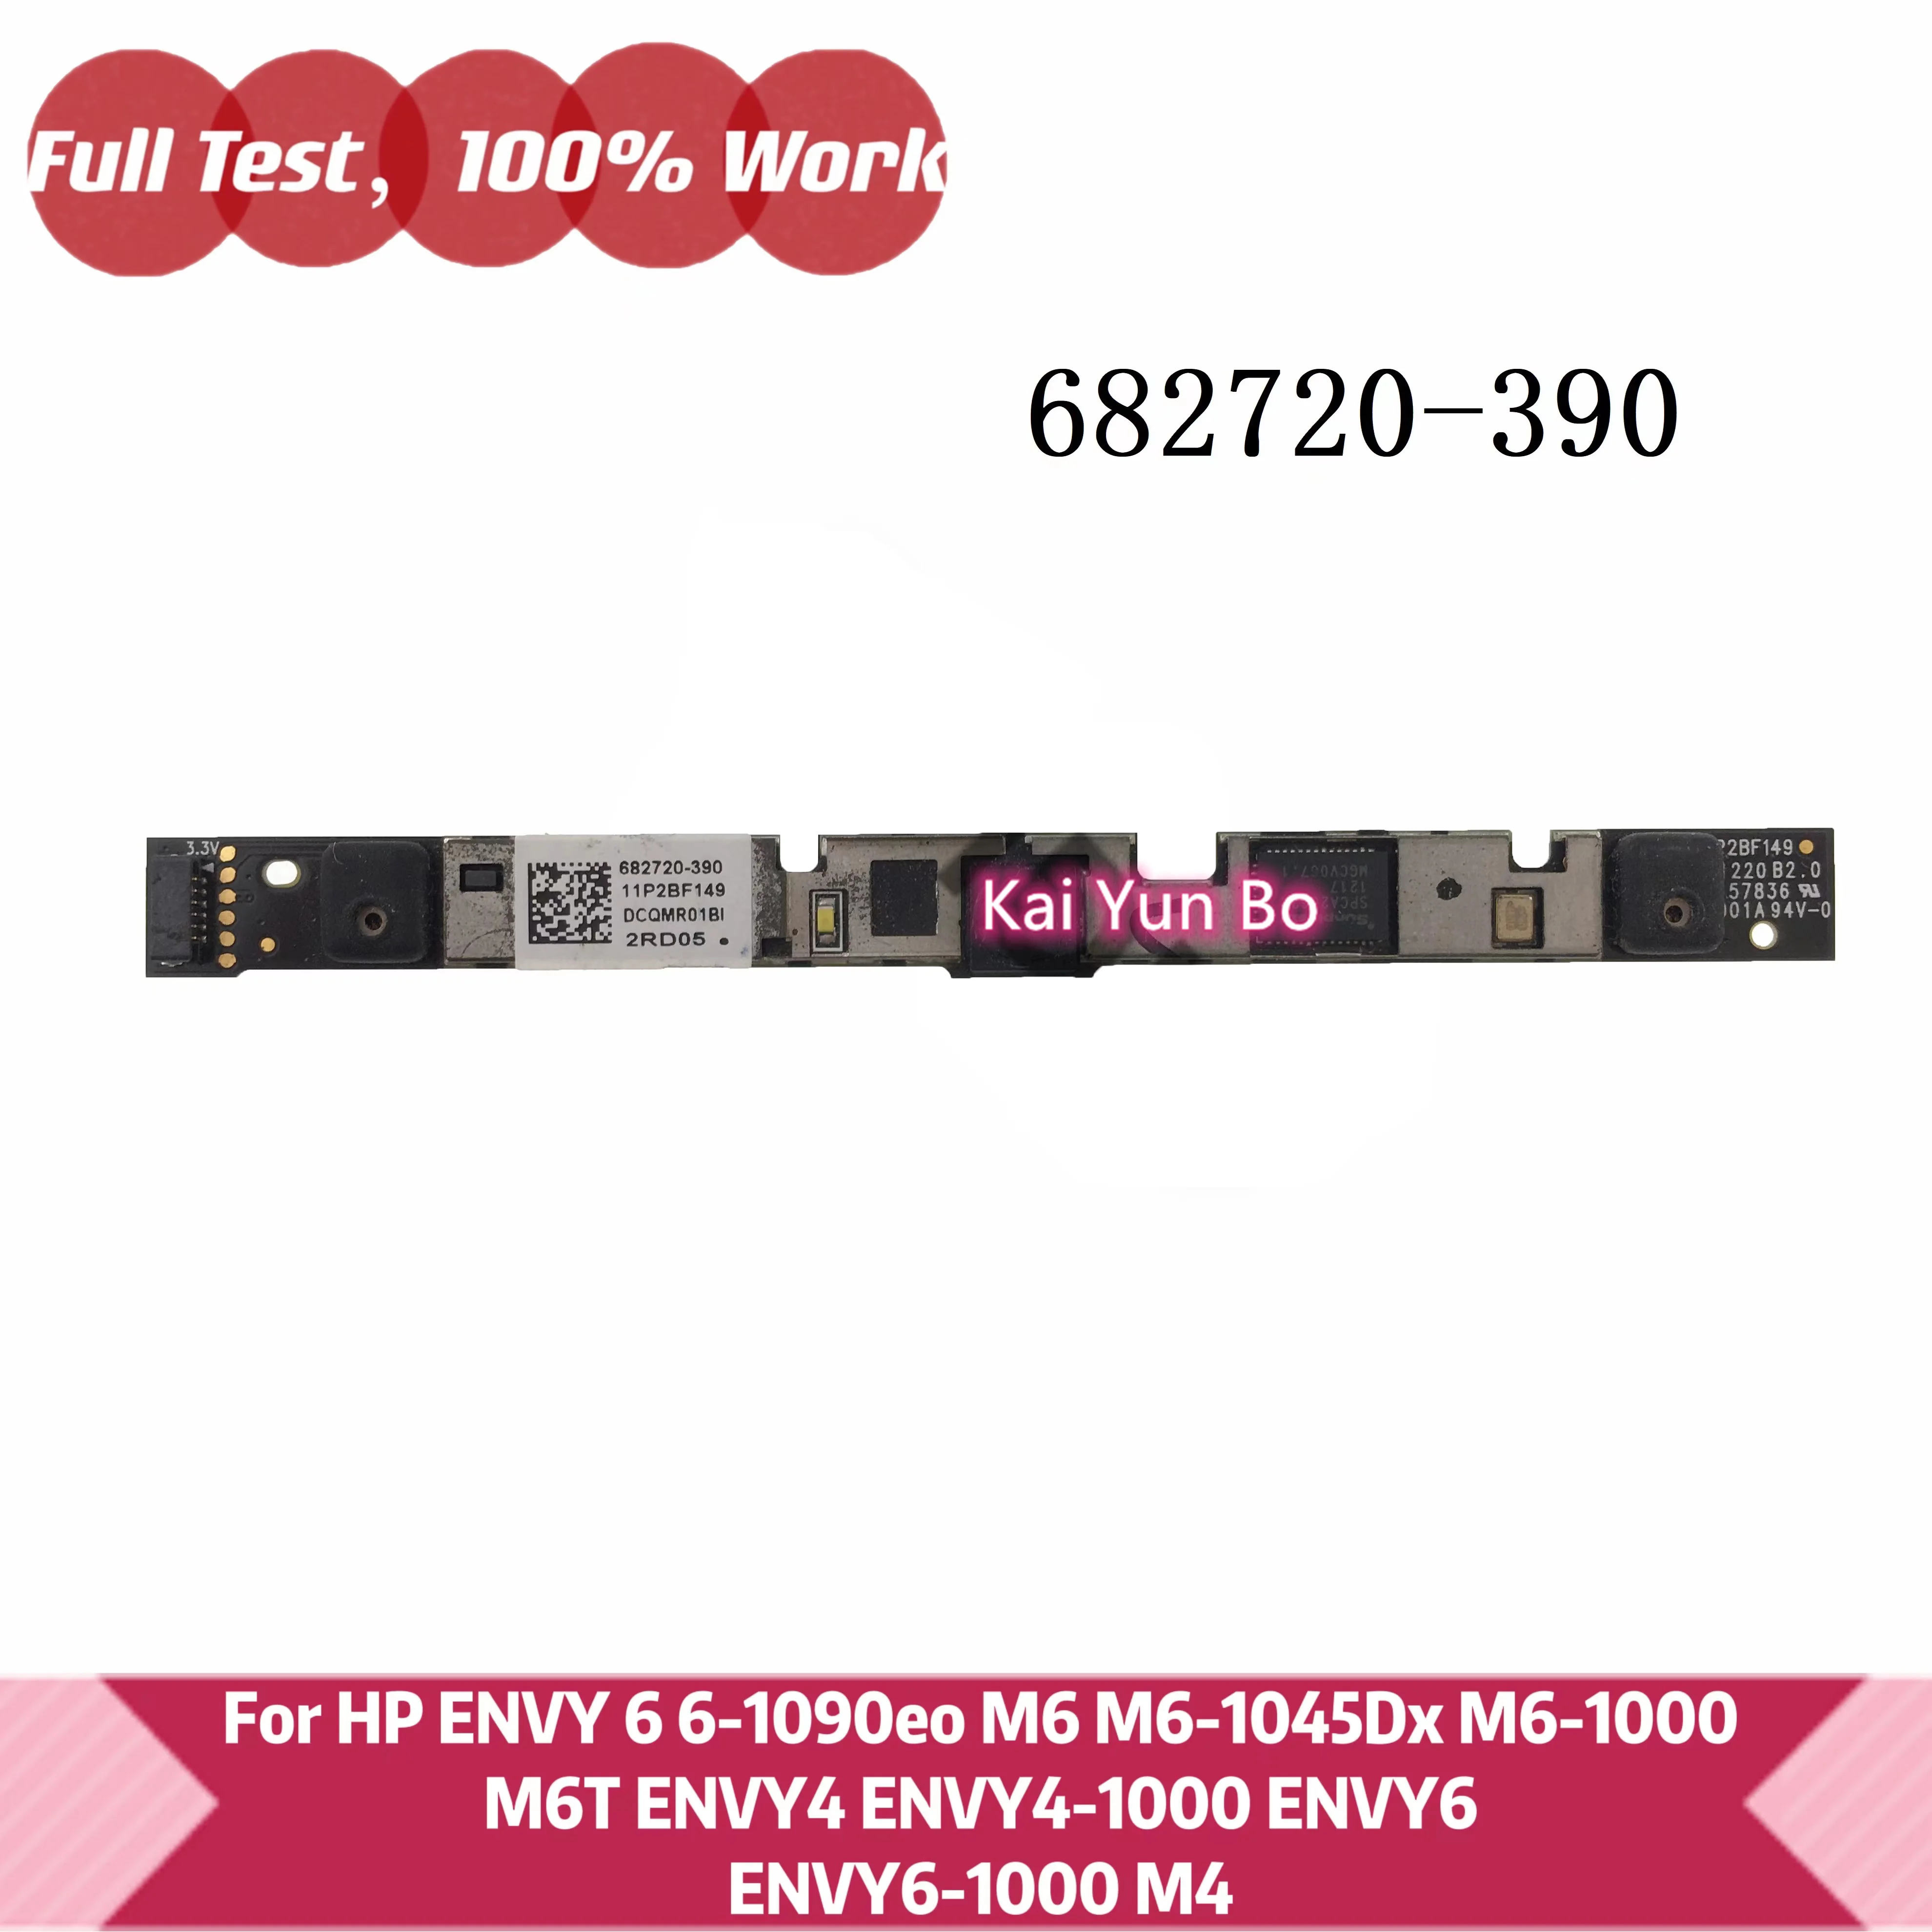 

HP ENVY 6 6-1090eo M6 M6-1045Dx M6-1000 M6T ENVY4 ENVY4-1000 ENVY6-1000 M4 модуль платы веб-камеры ноутбука спереди 682720-390